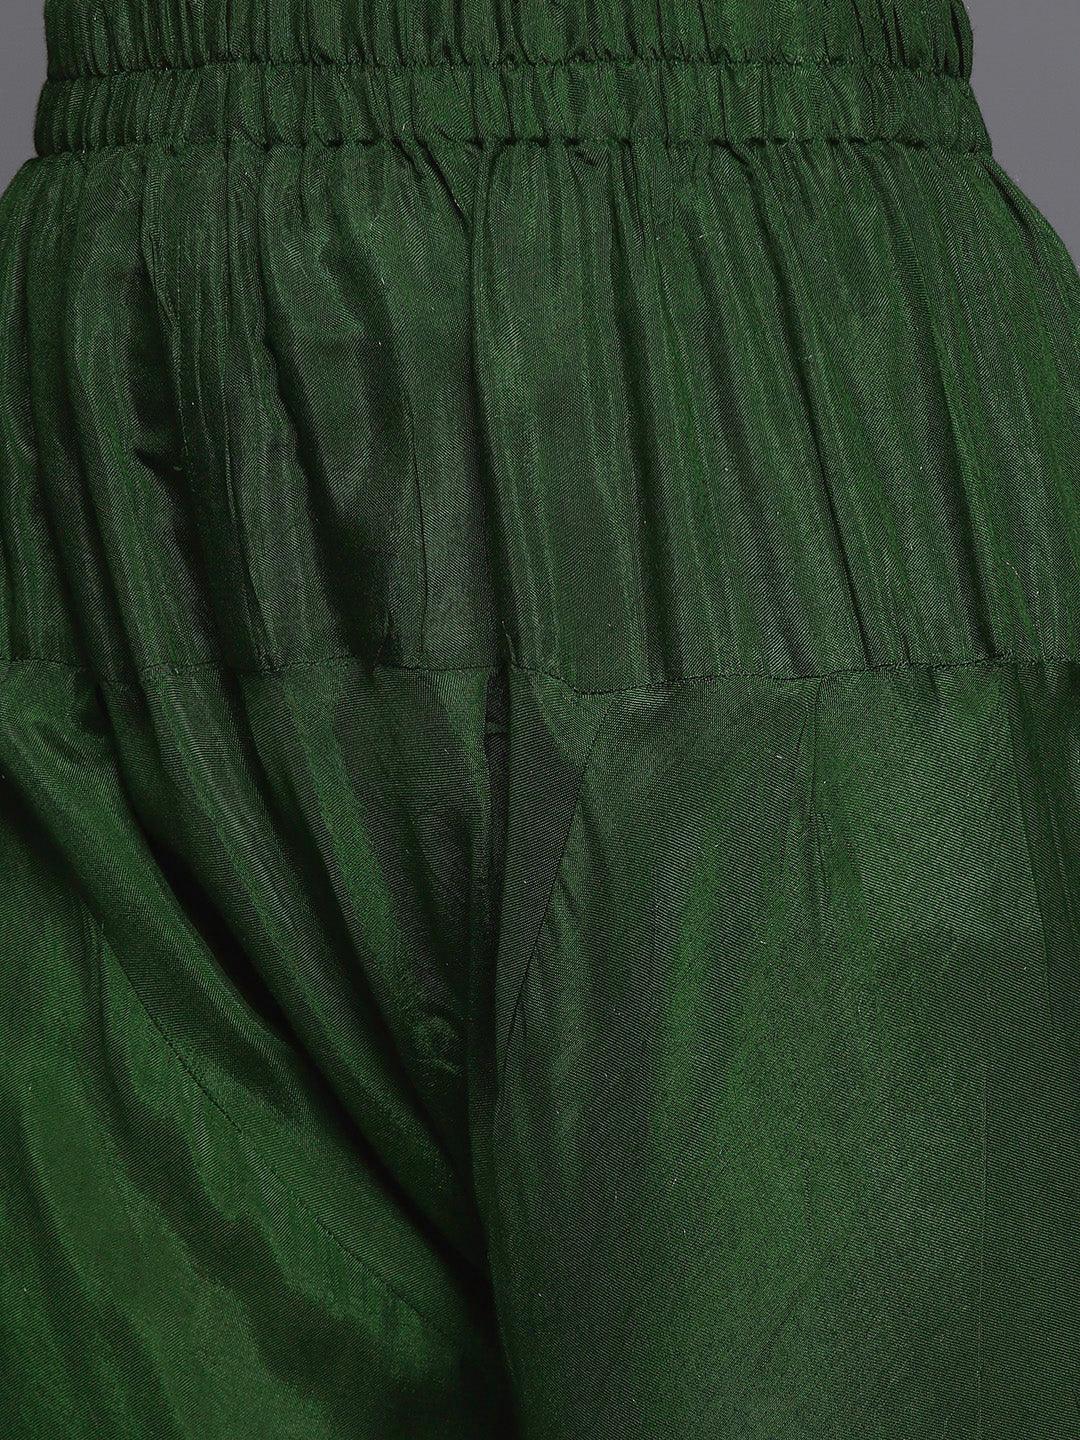 Green Self Design Silk Anarkali Kurta With Churidar & Dupatta